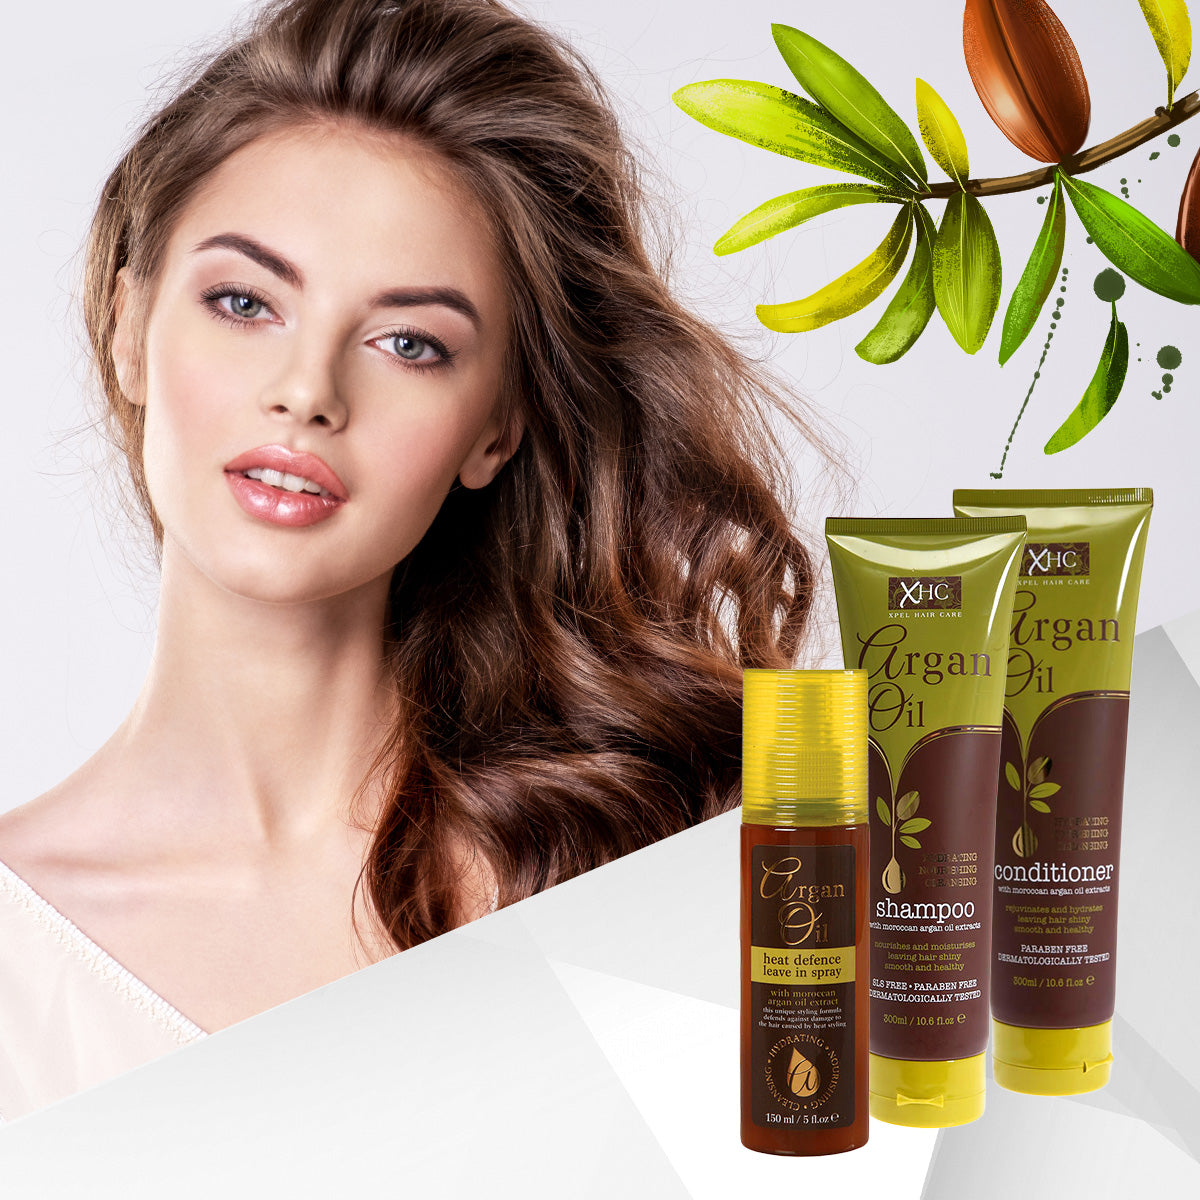 Šampon pro obnovu struktury vlasů s arganovým olejem - 300 ml